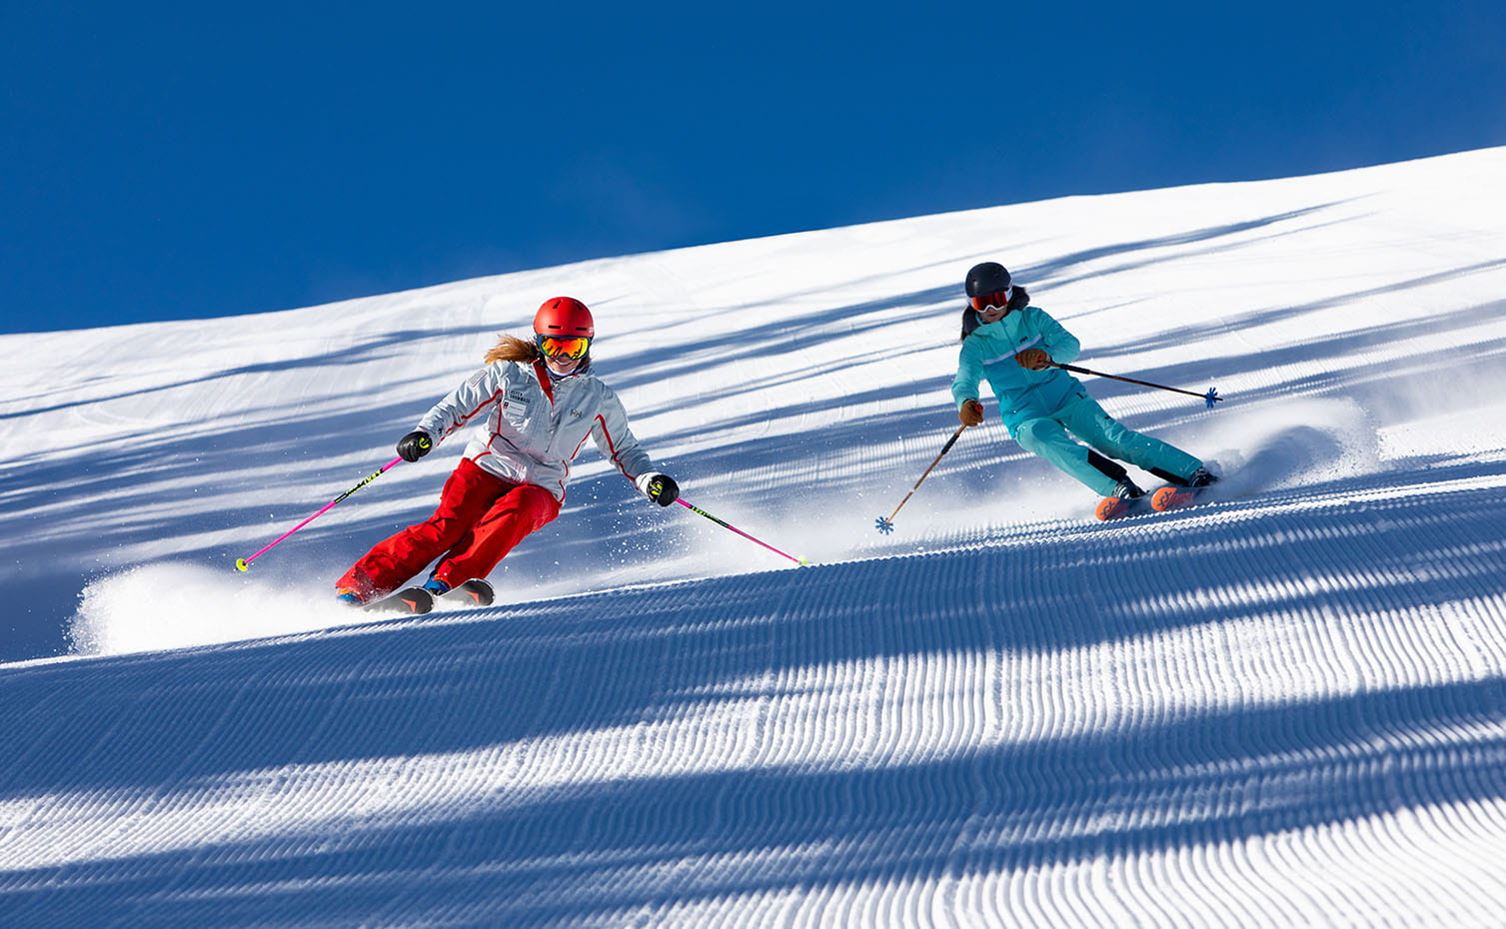 阿斯本滑雪课程常见问答